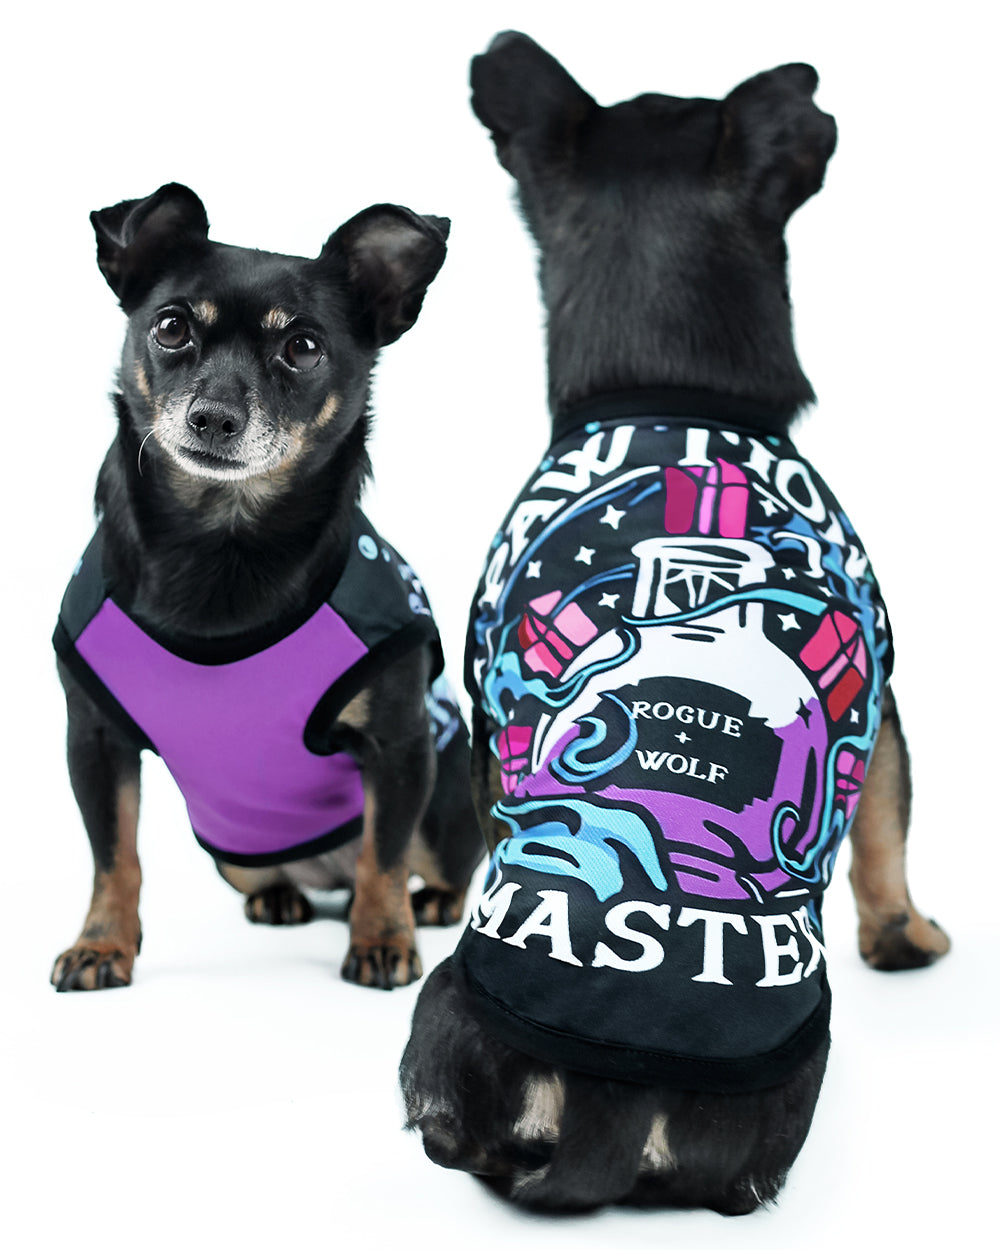 Pawtion Master Pet Vest - Dog or Cat